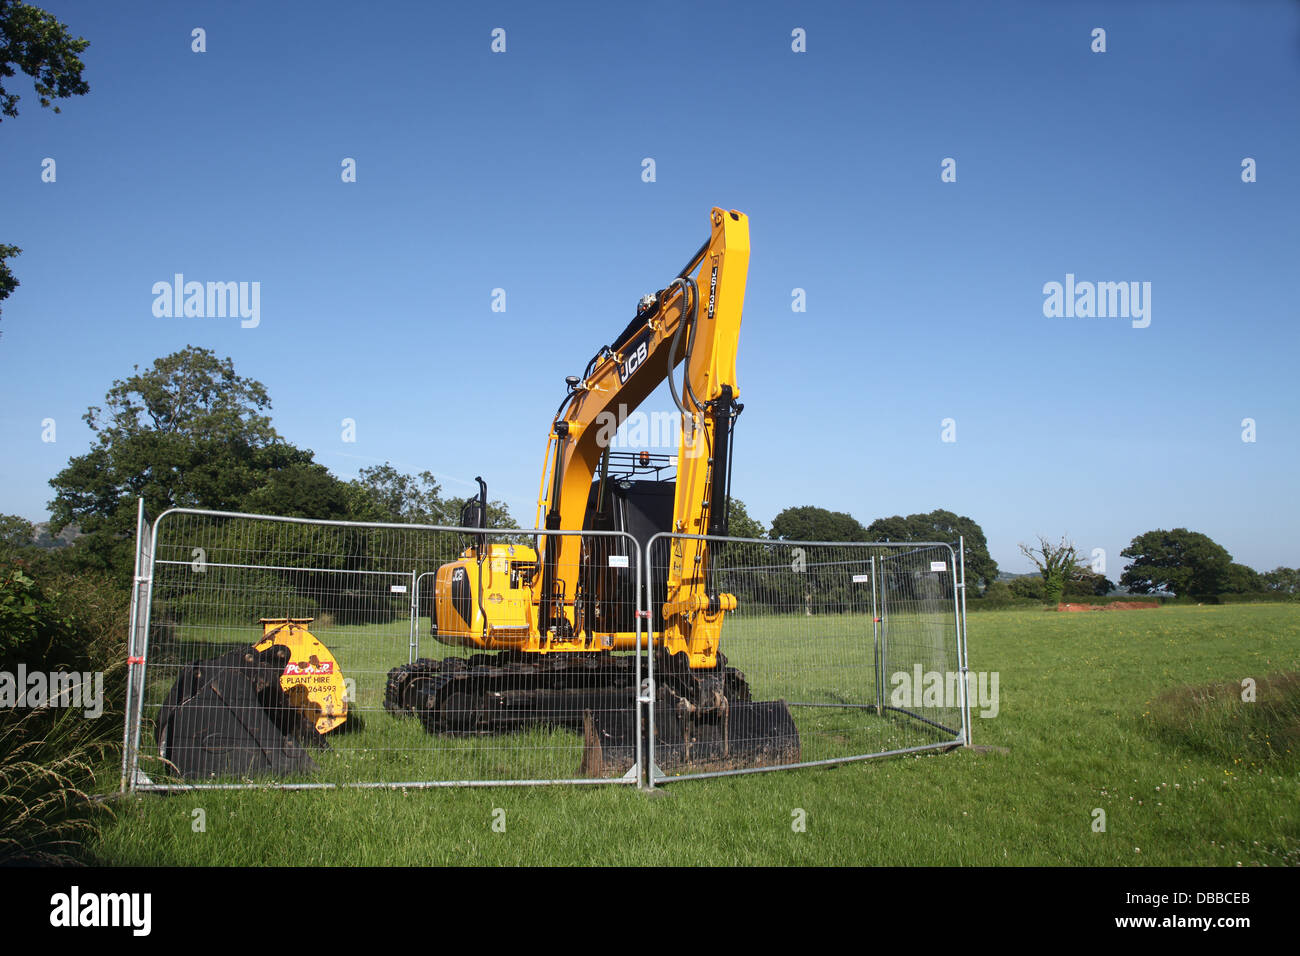 Grande escavatore giallo parcheggiato in un campo sotto un cielo blu chiaro, Luglio 2013 Foto Stock